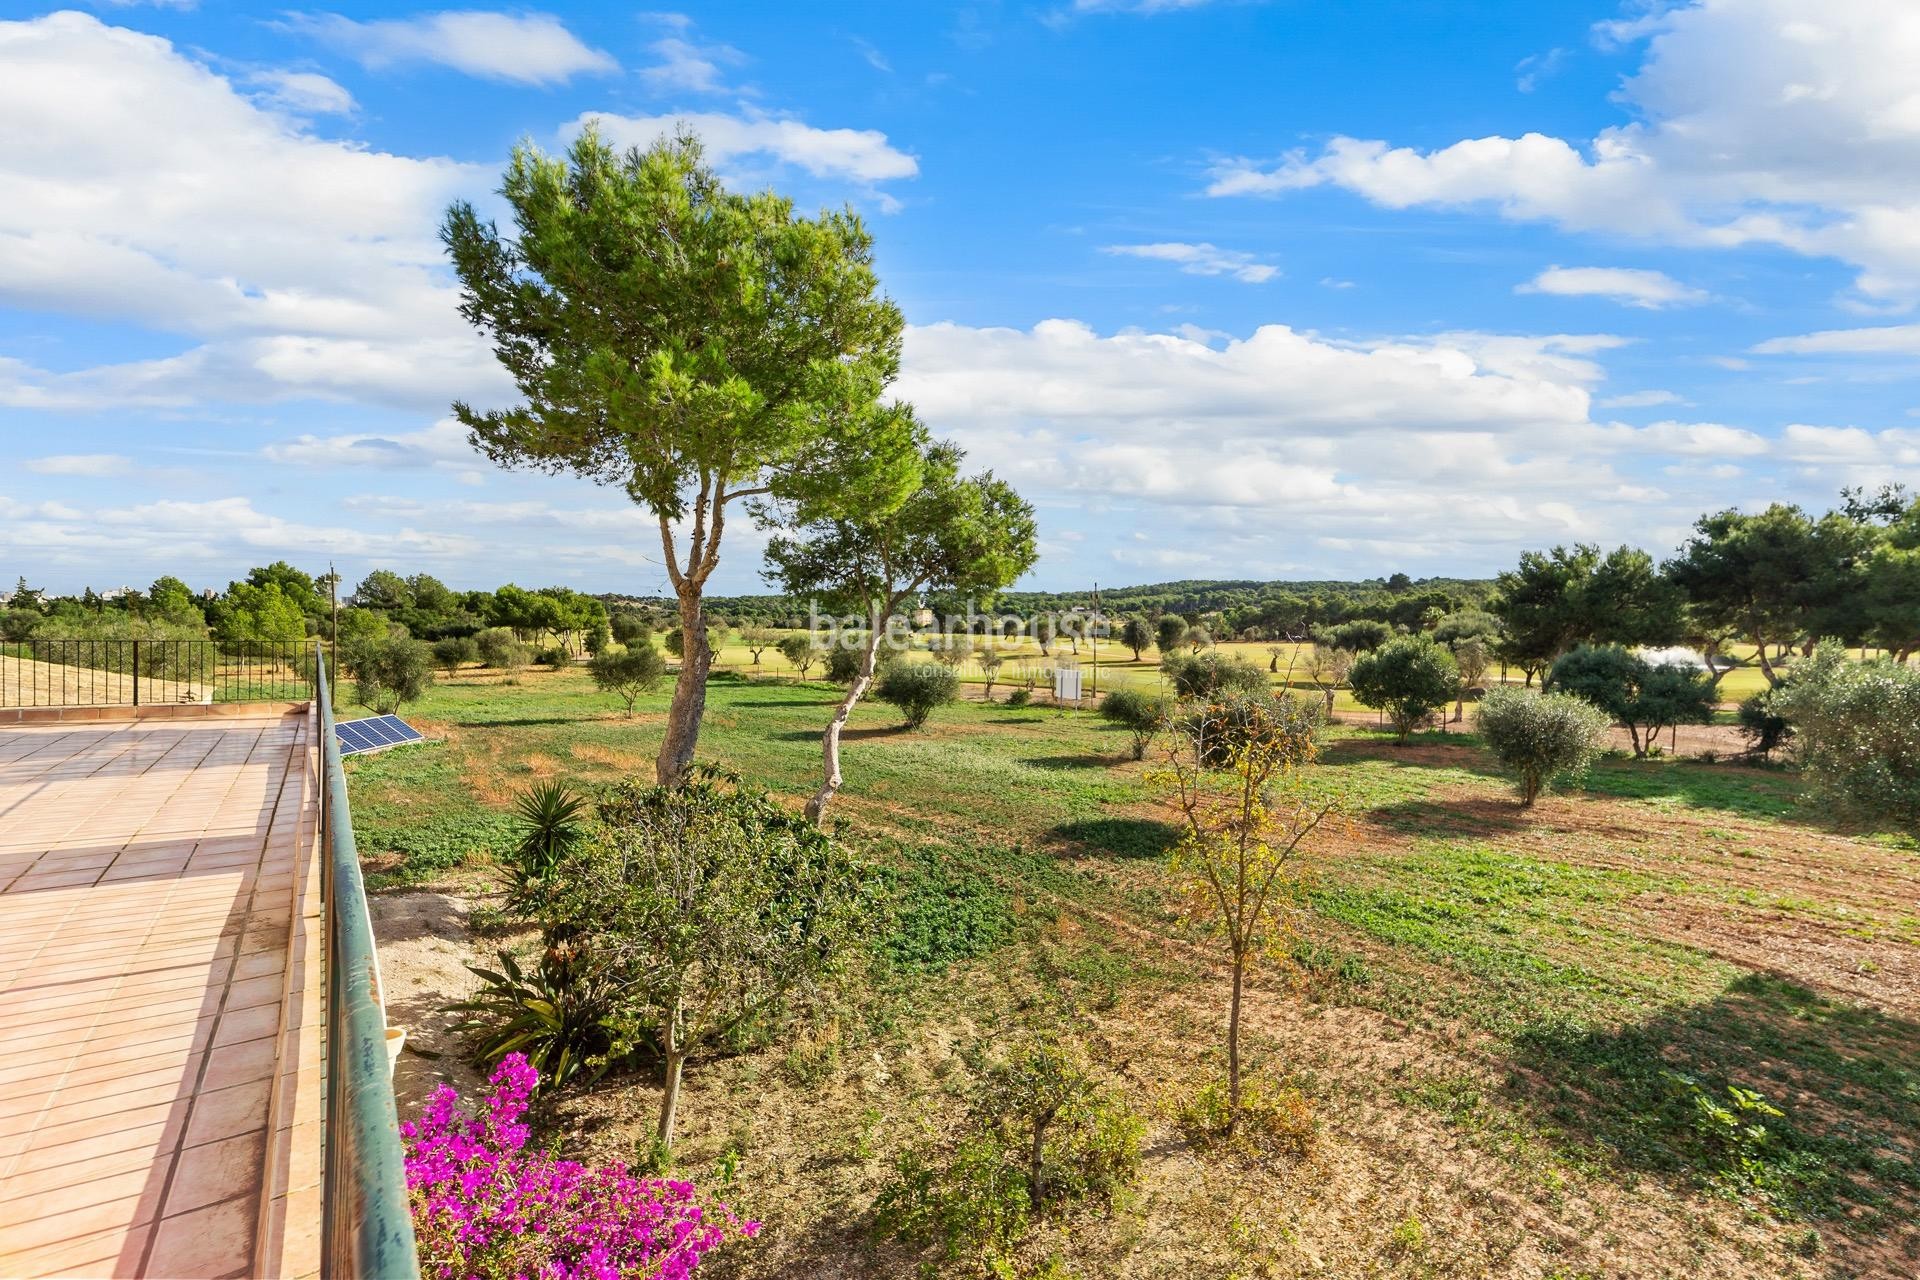 Wunderschöne mallorquinische Finca direkt am Golfplatz in der Nähe von Port Adriano.